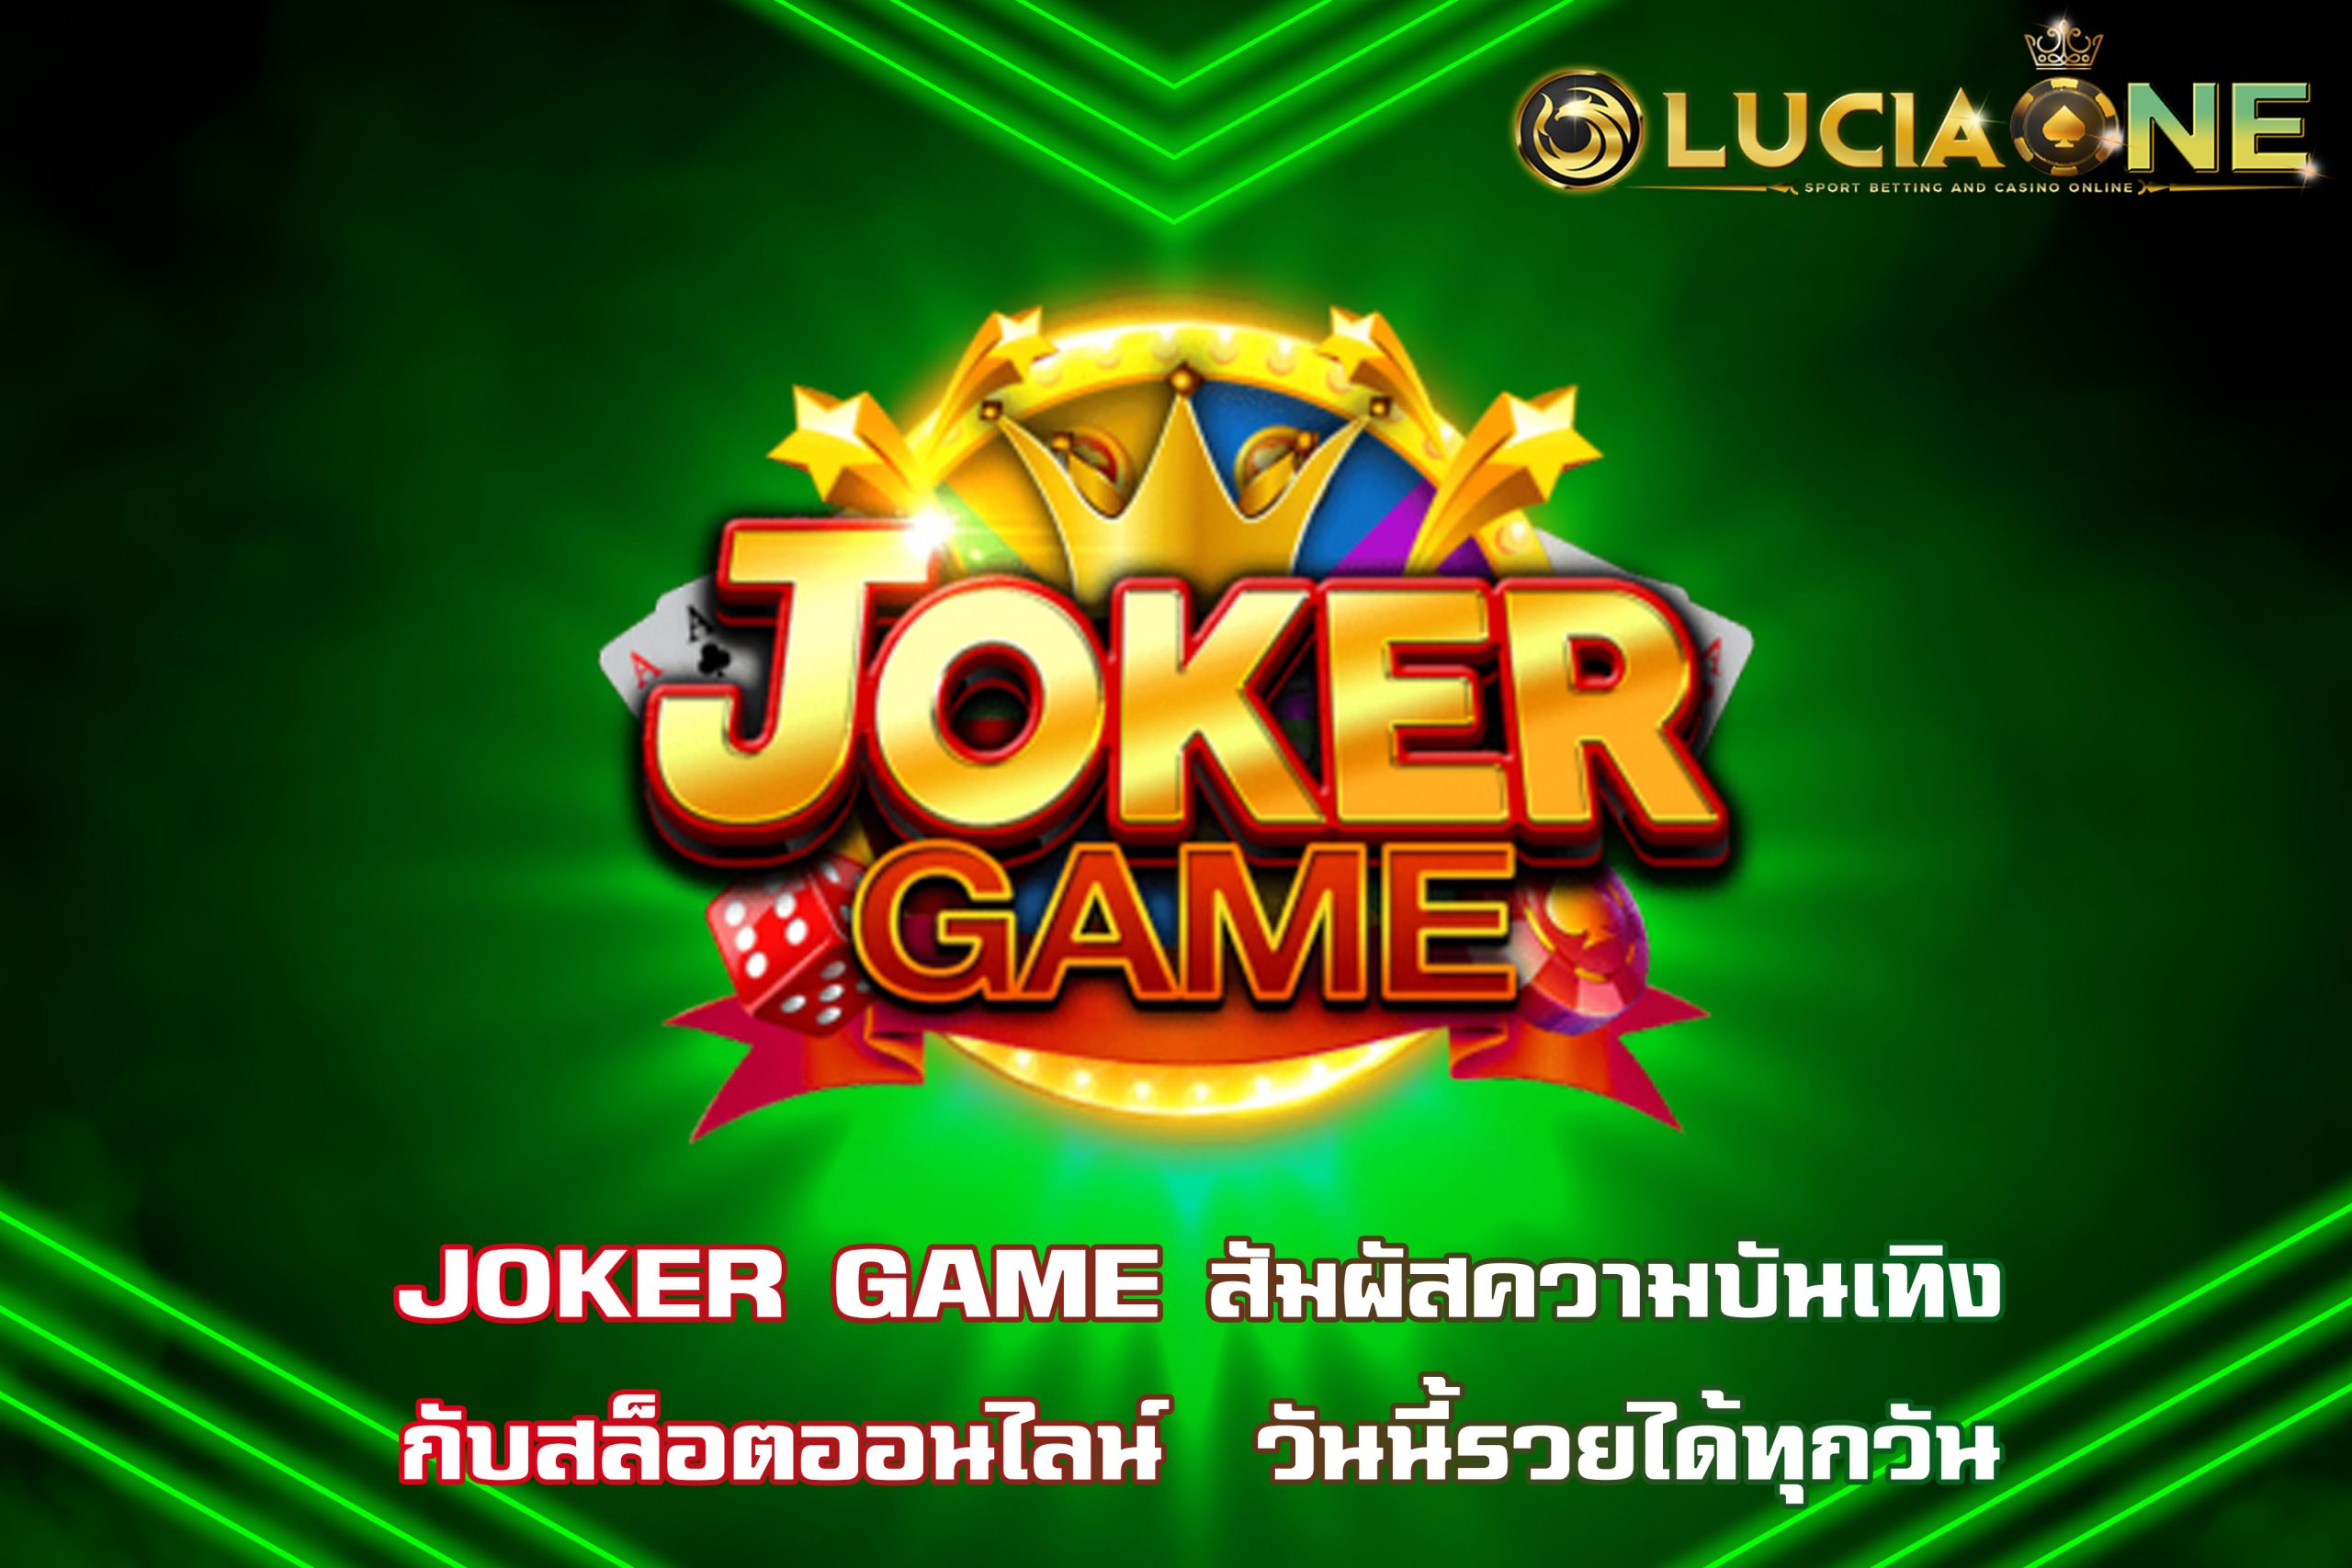 JOKER GAME สัมผัสความบันเทิง กับสล็อตออนไลน์  วันนี้รวยได้ทุกวัน